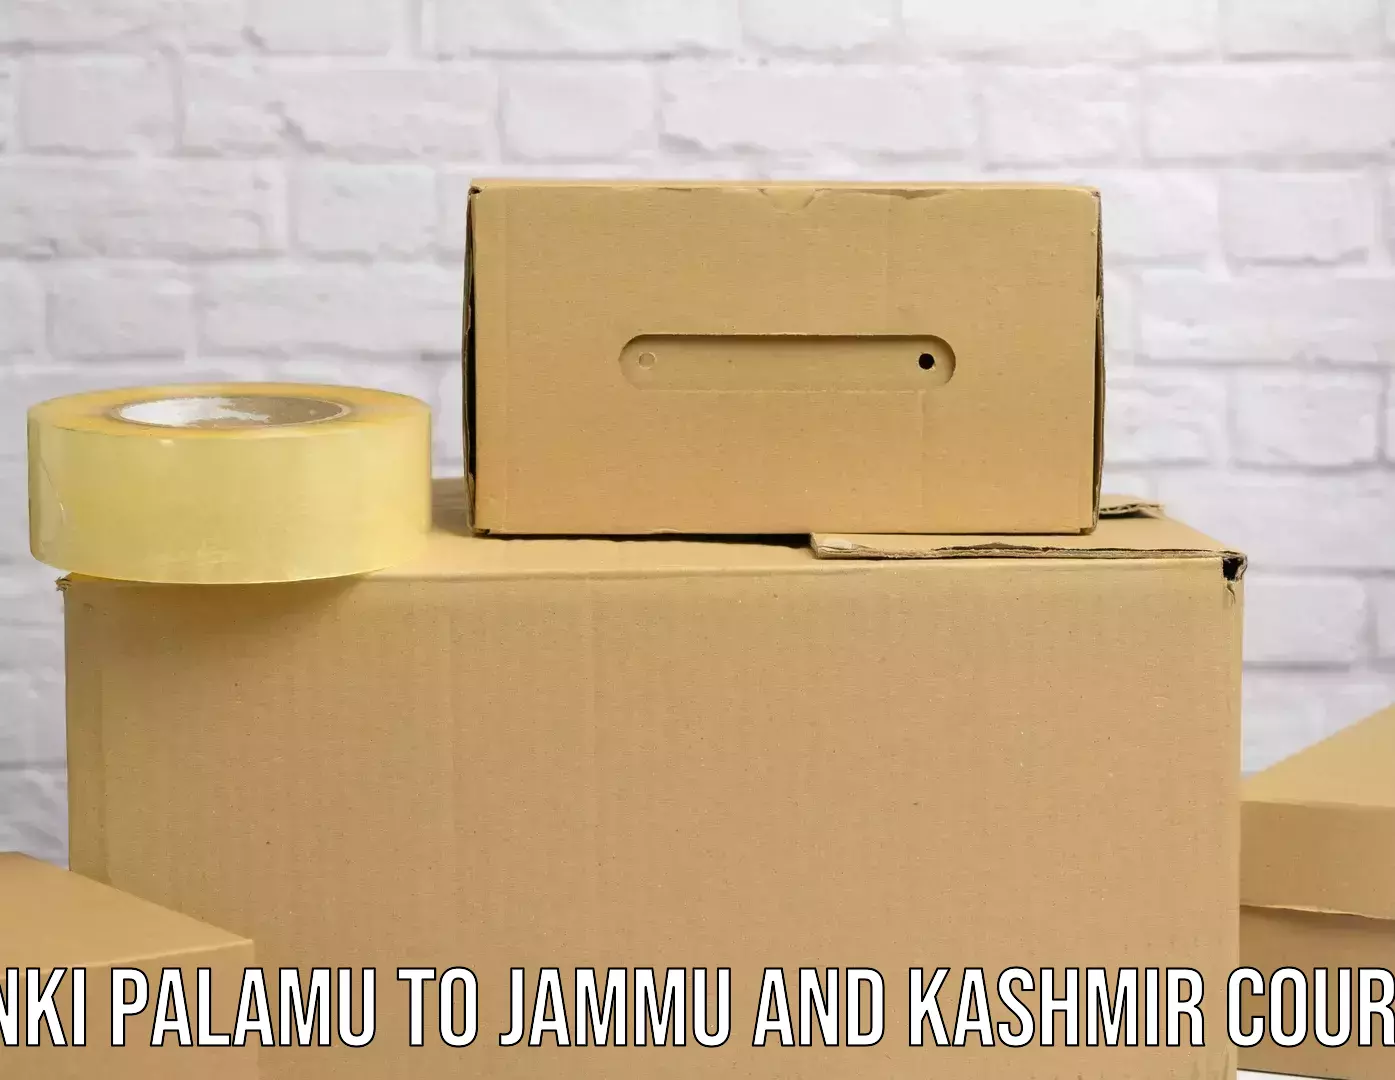 Express mail service Panki Palamu to University of Jammu